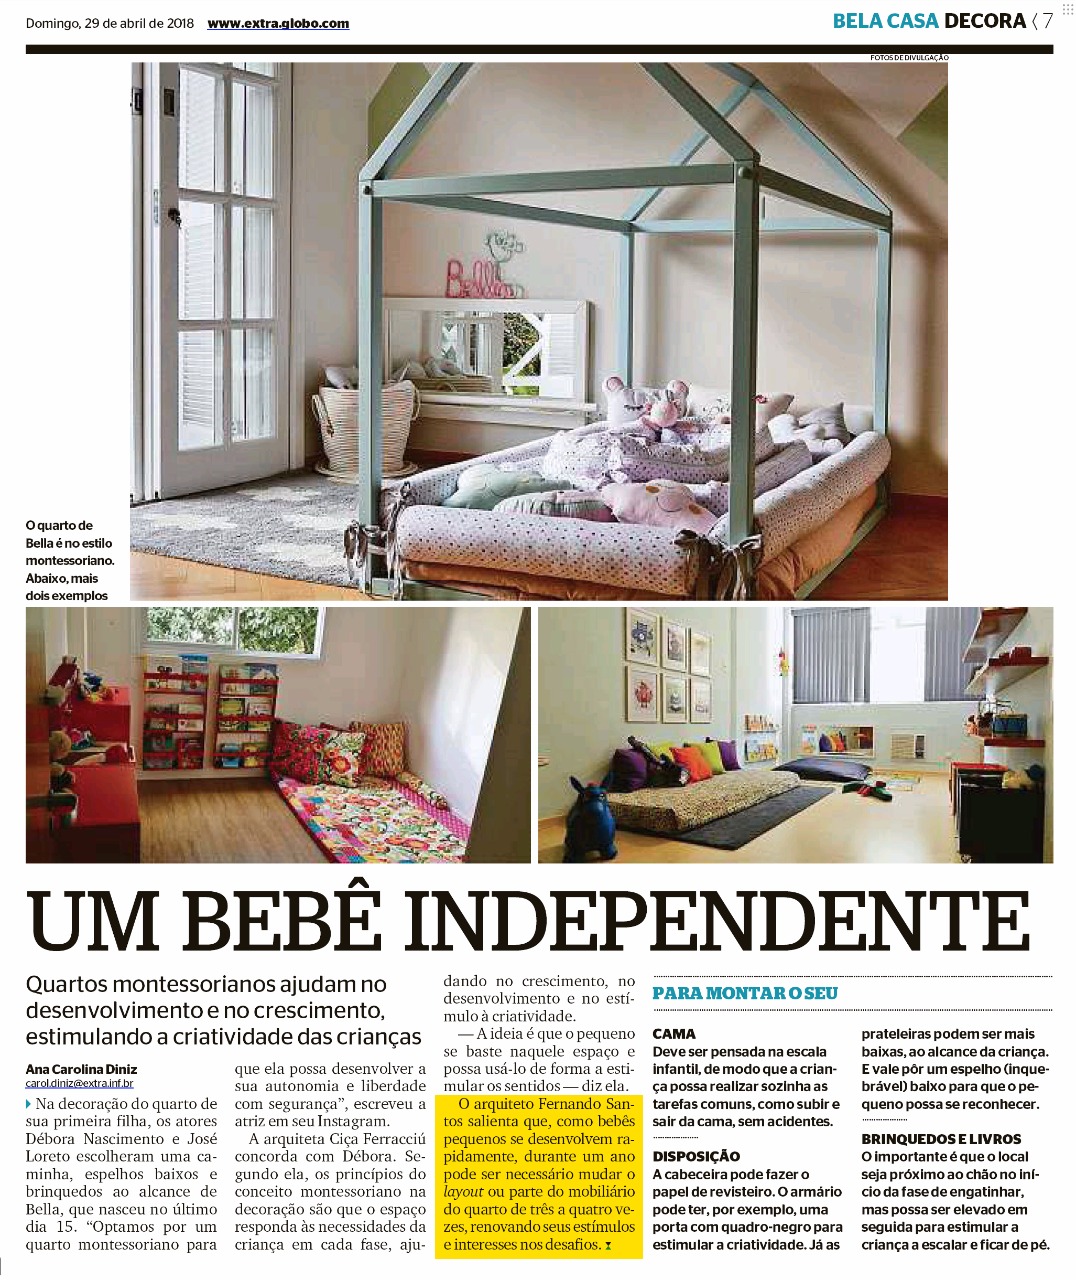 Jornal Extra (Bela Casa Decora) – matéria Um bebê independente